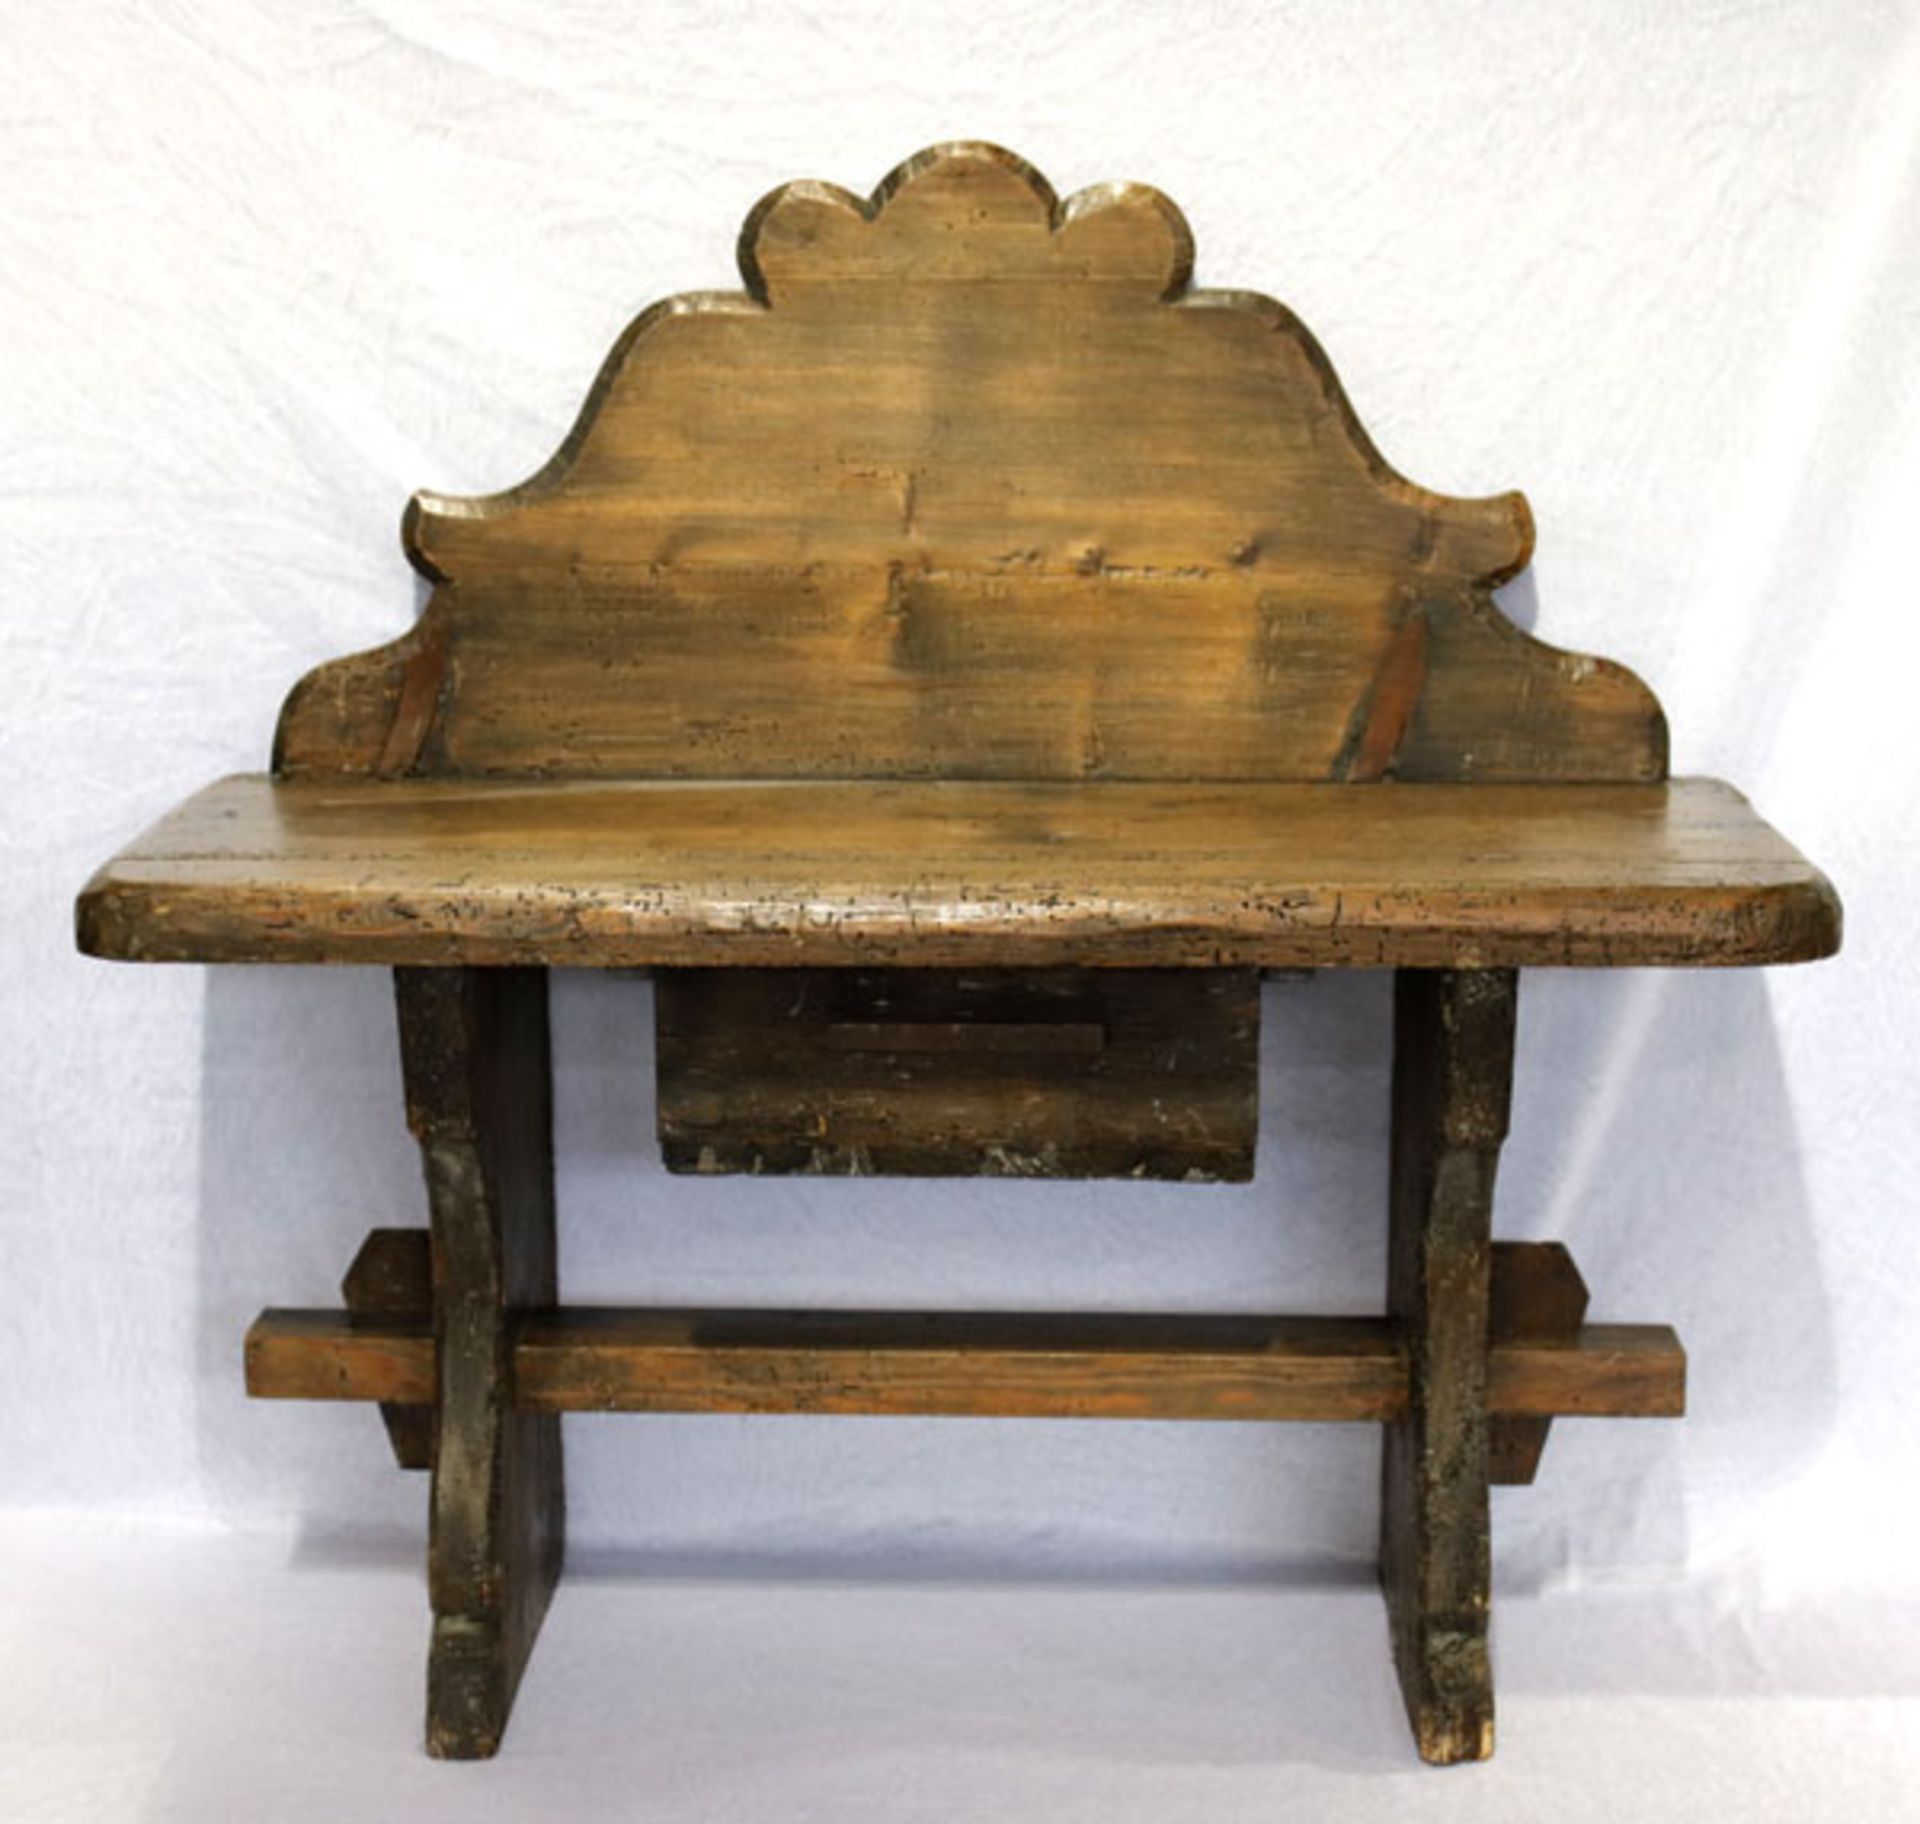 Rustikale Holzbank, Korpus mit einer Schublade, H 74 cm, B 77 cm, T 27 cm, altersbedingter